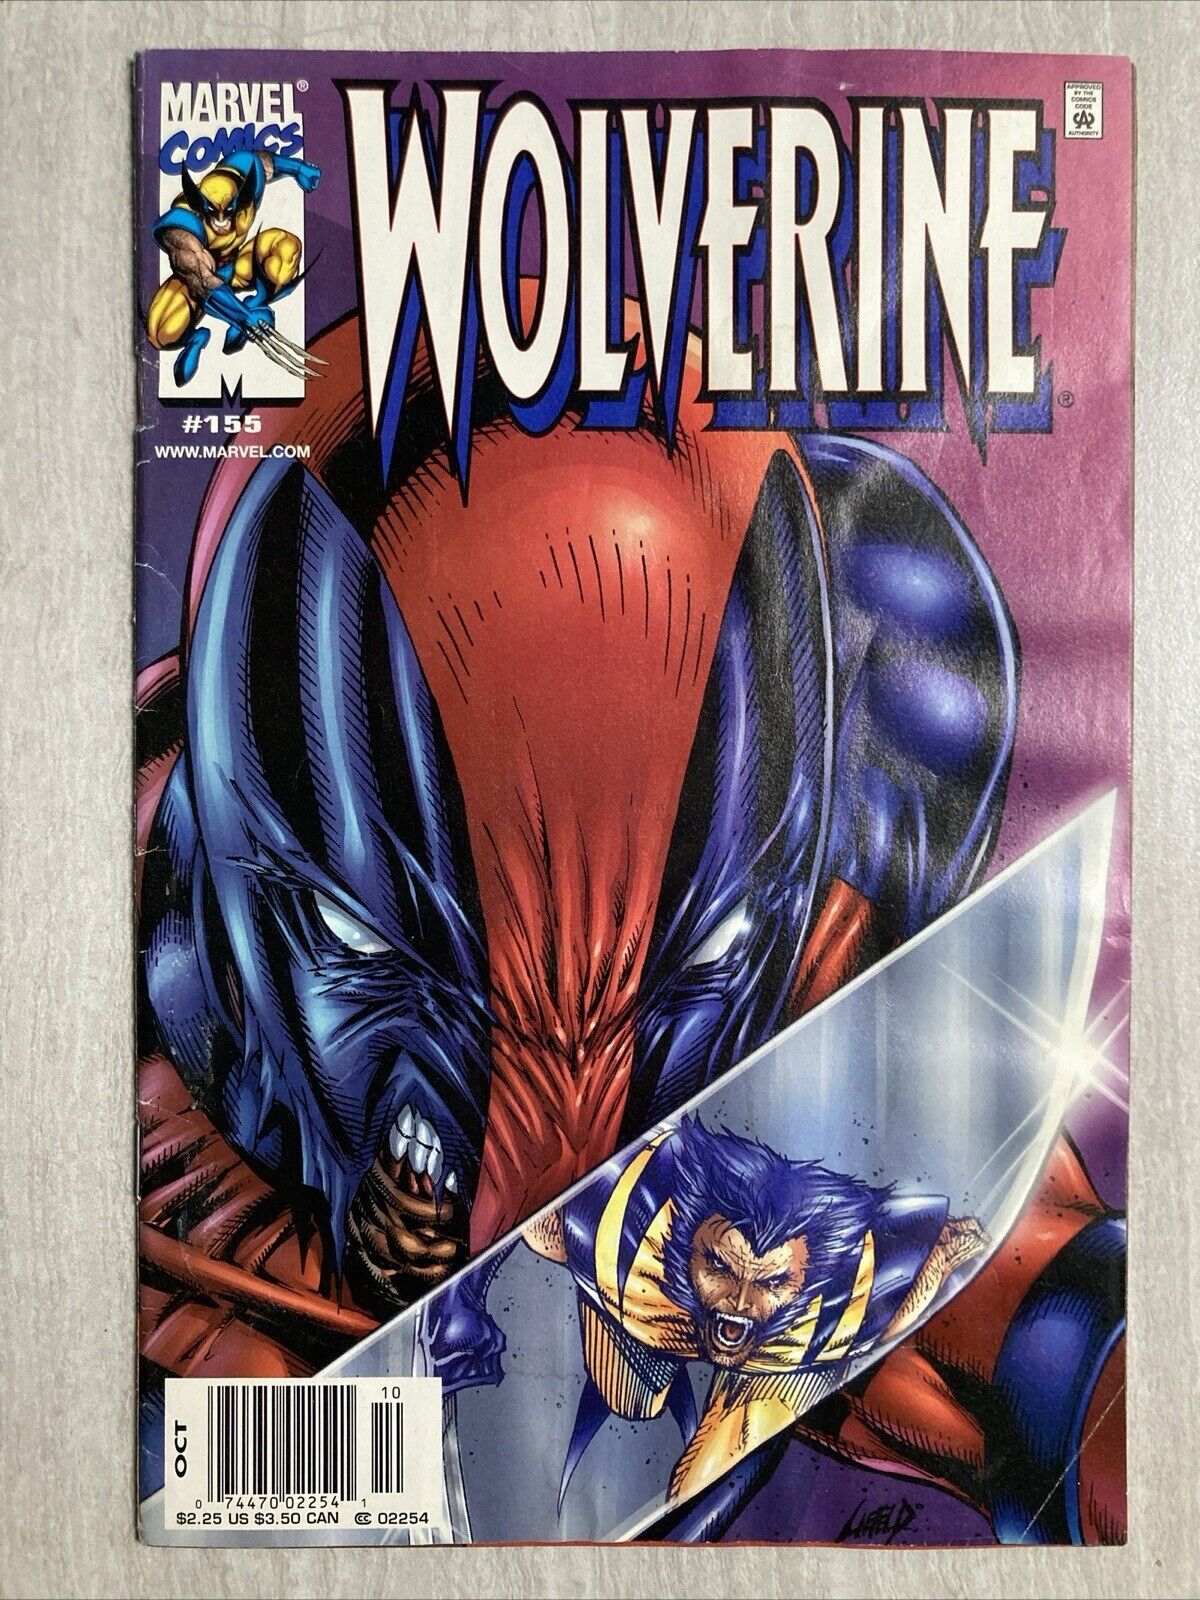 Wolverine #155 Newsstand (Marvel Comics 2000) Deadpool - Hulk 340 Homage